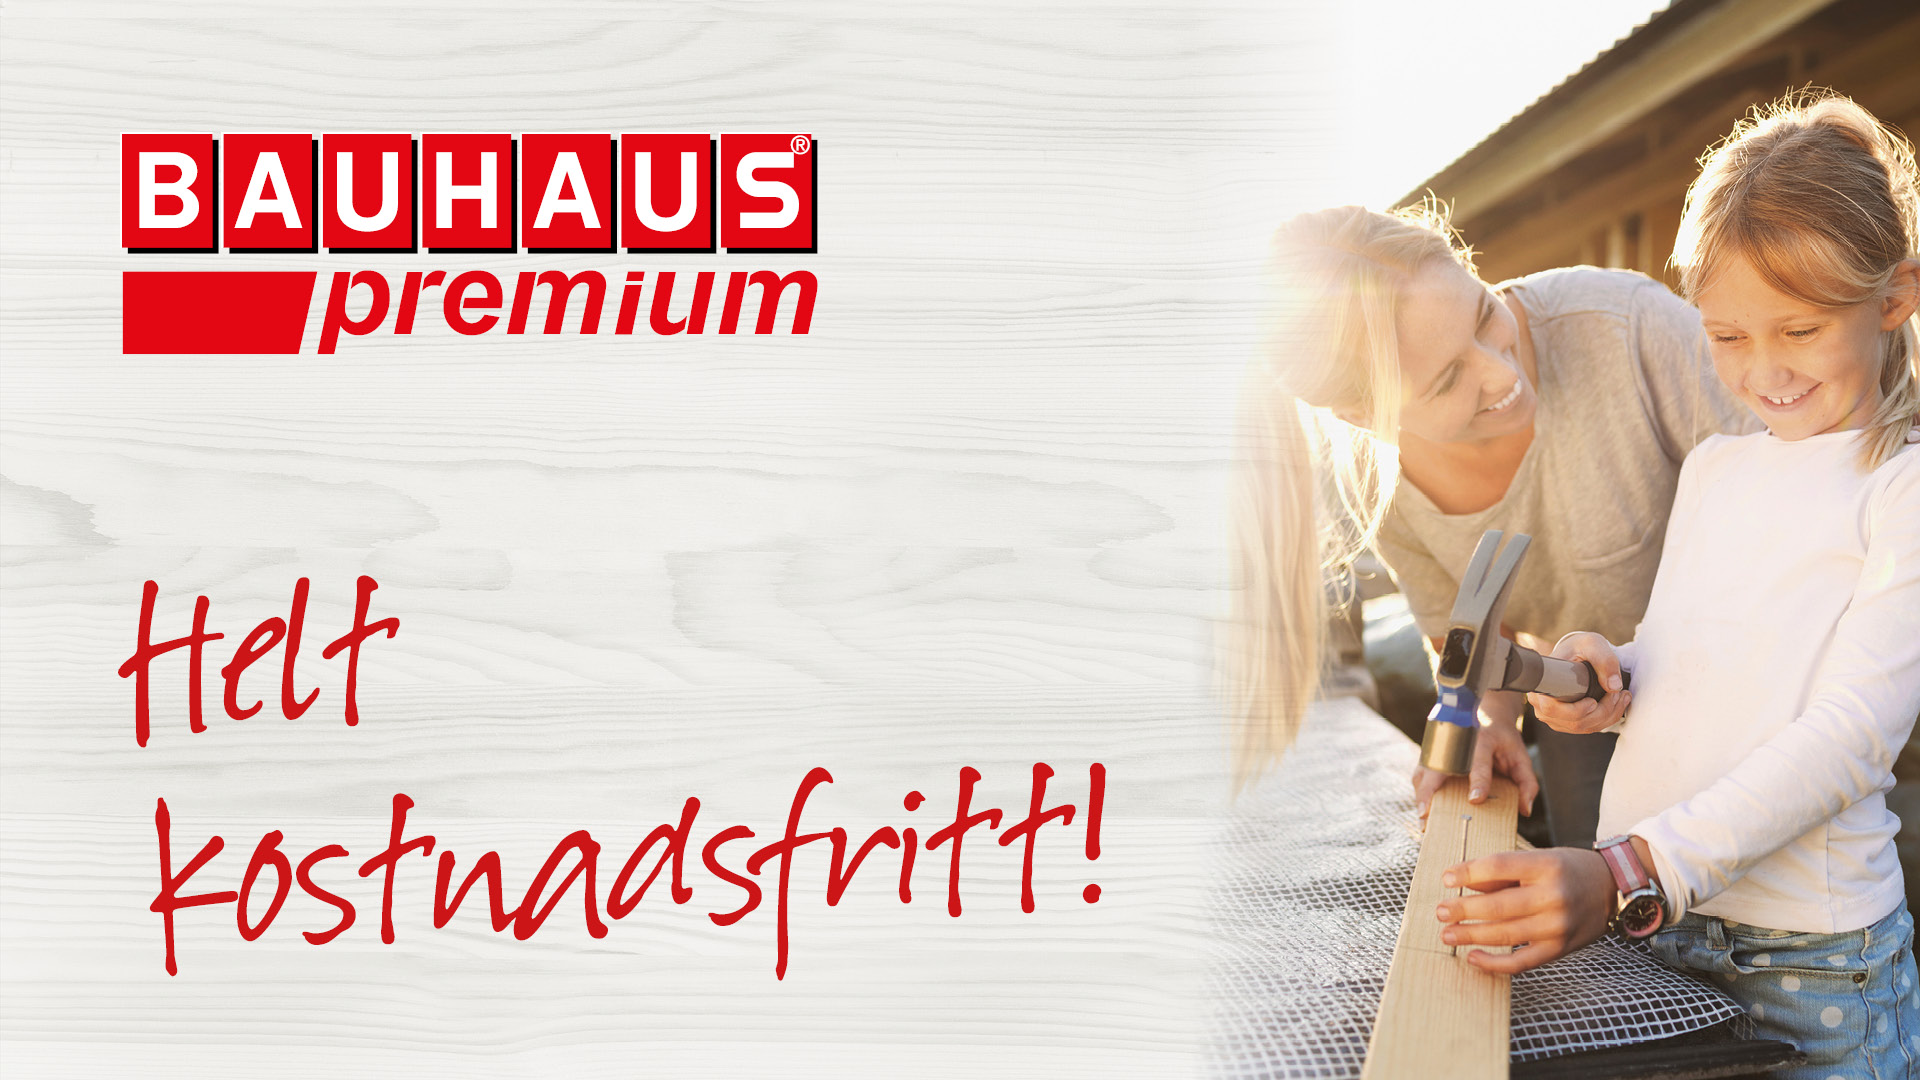 Plus Card Bauhaus Premium